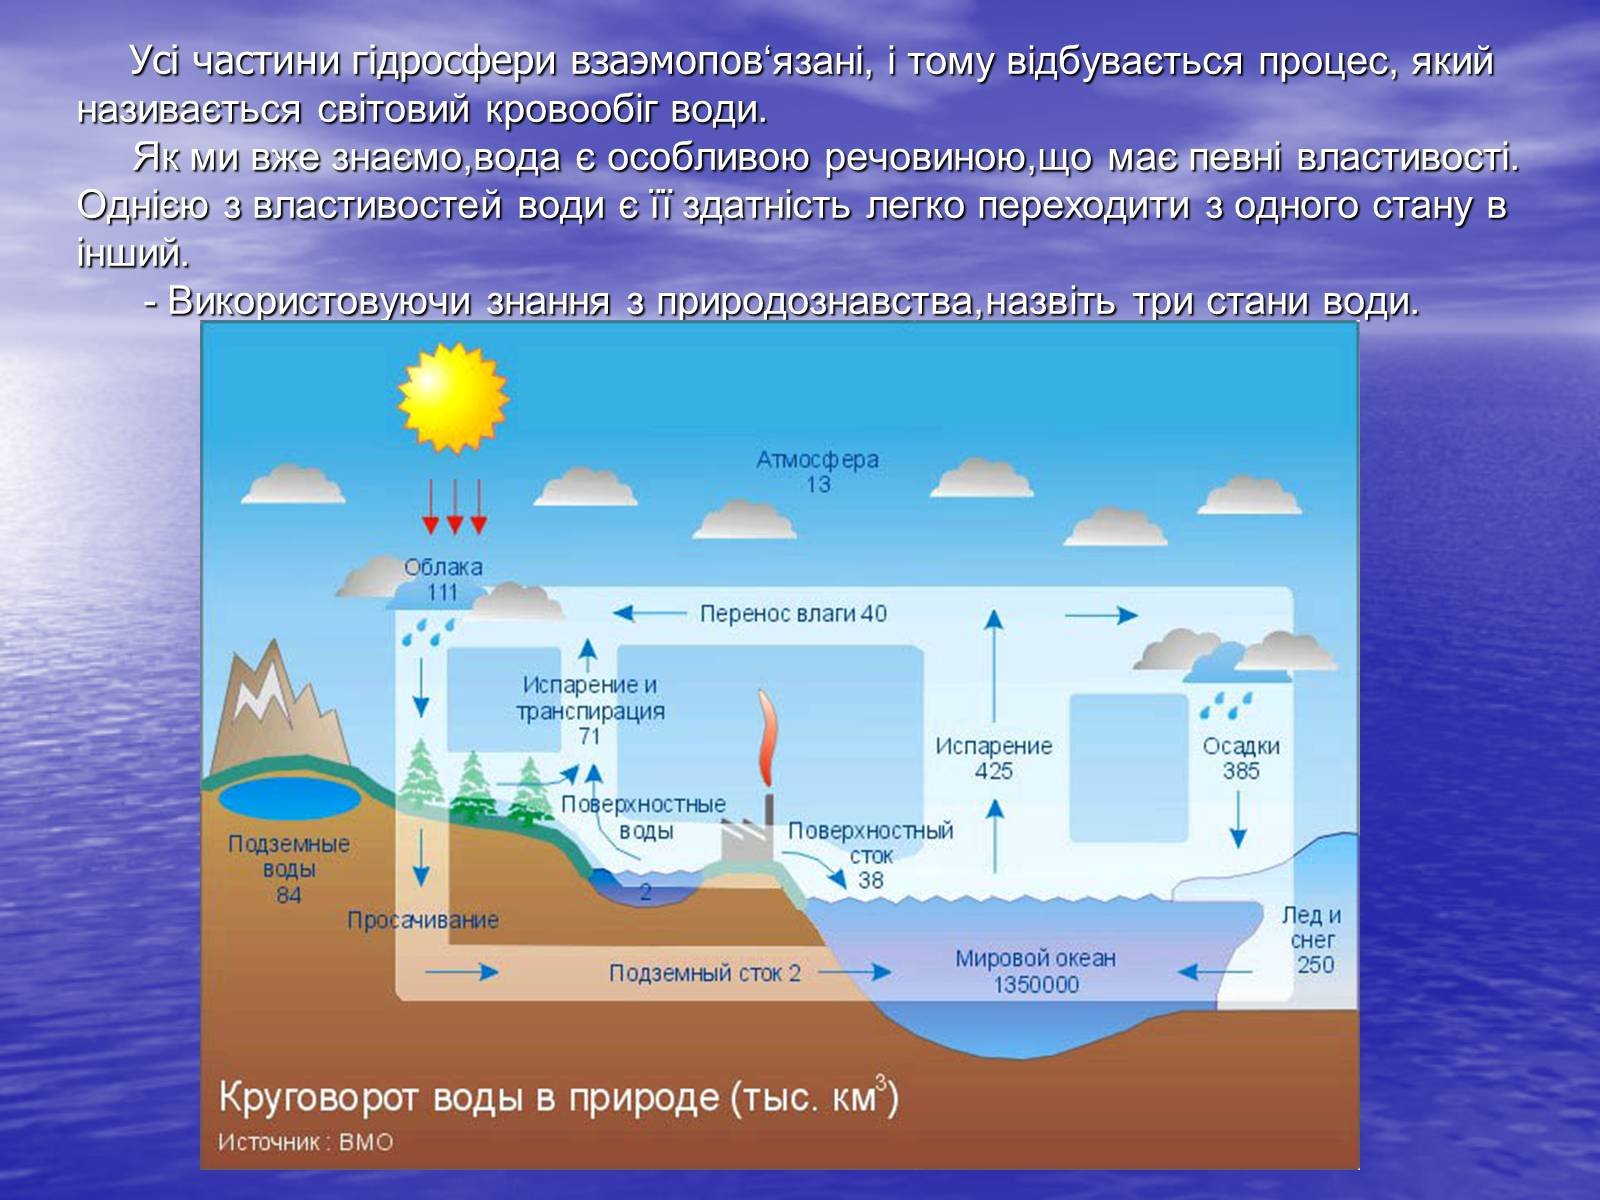 В атмосферной воде содержится. Гидрологический круговорот воды схема. Гидросфера круговорот воды. Гидрологический цикл круговорота воды. Мировой круговорот в природе.